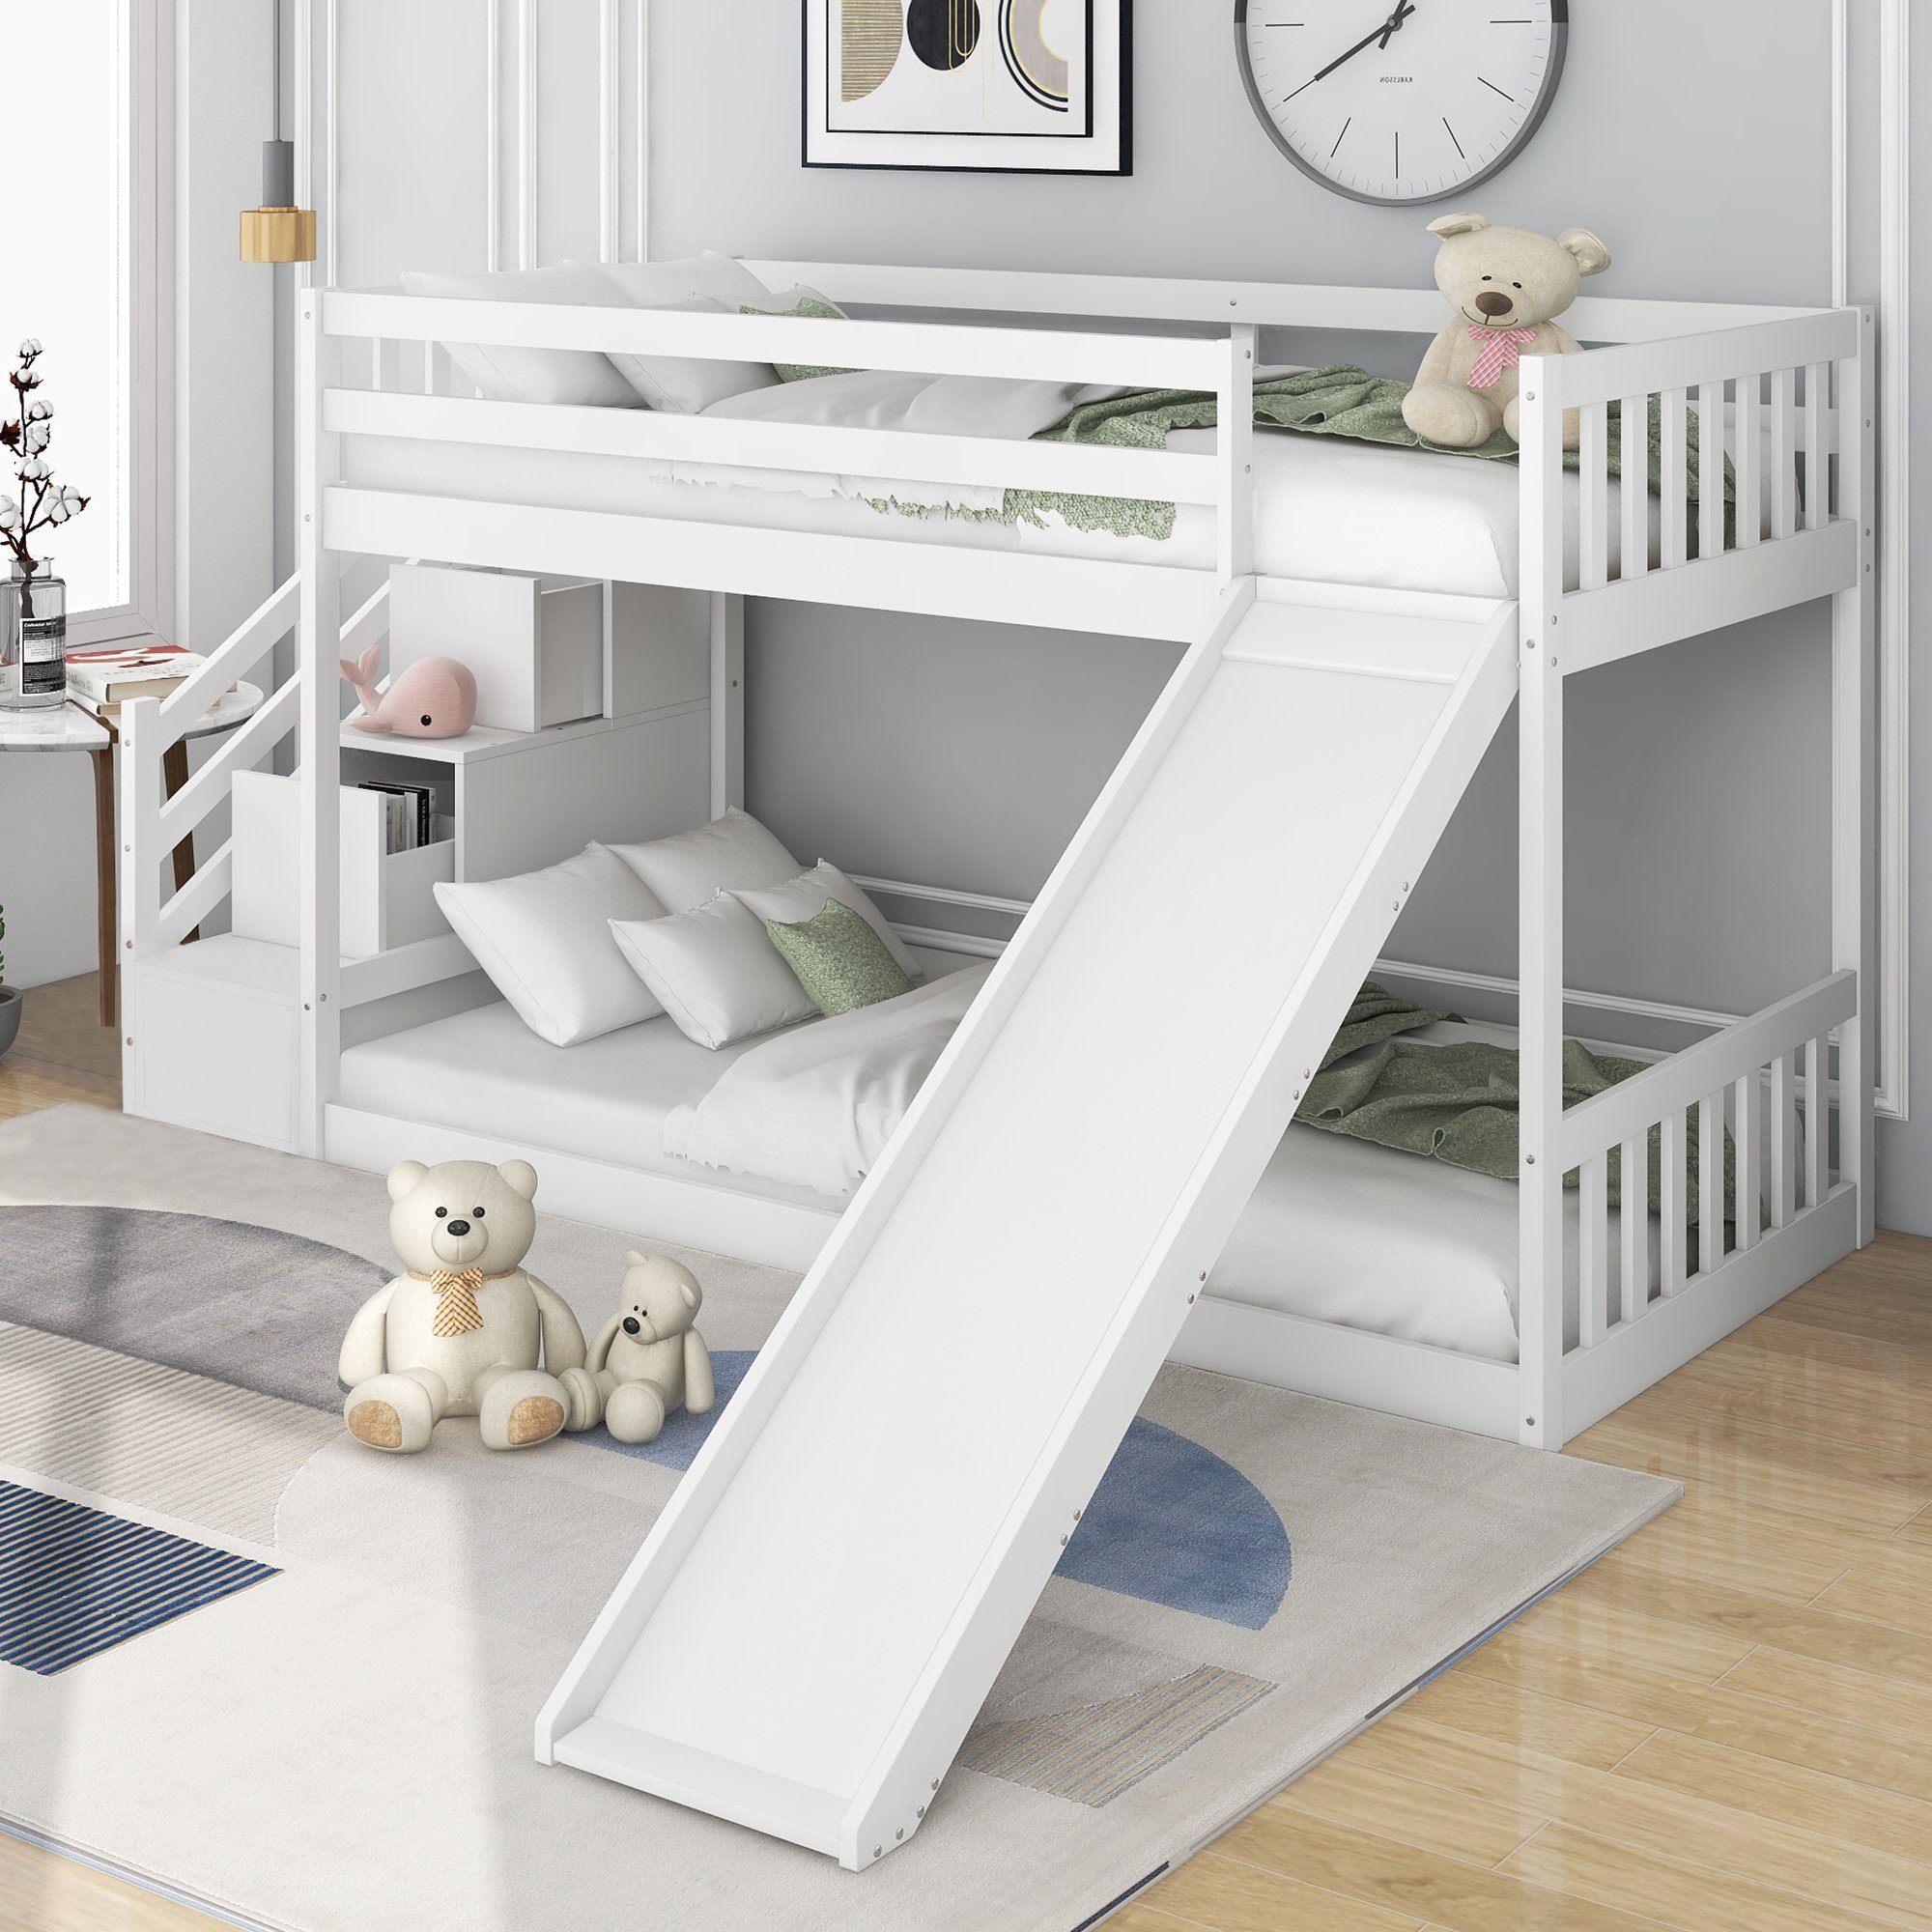 REDOM Kinderbett Etagenbett mit Treppe und Rutsche, Rahmen aus massivem Kiefernholz, (90x200cm, Weiß), Bequeme Treppe und Aufbewahrungsfunktion, Lustige Rutsche für Kinder